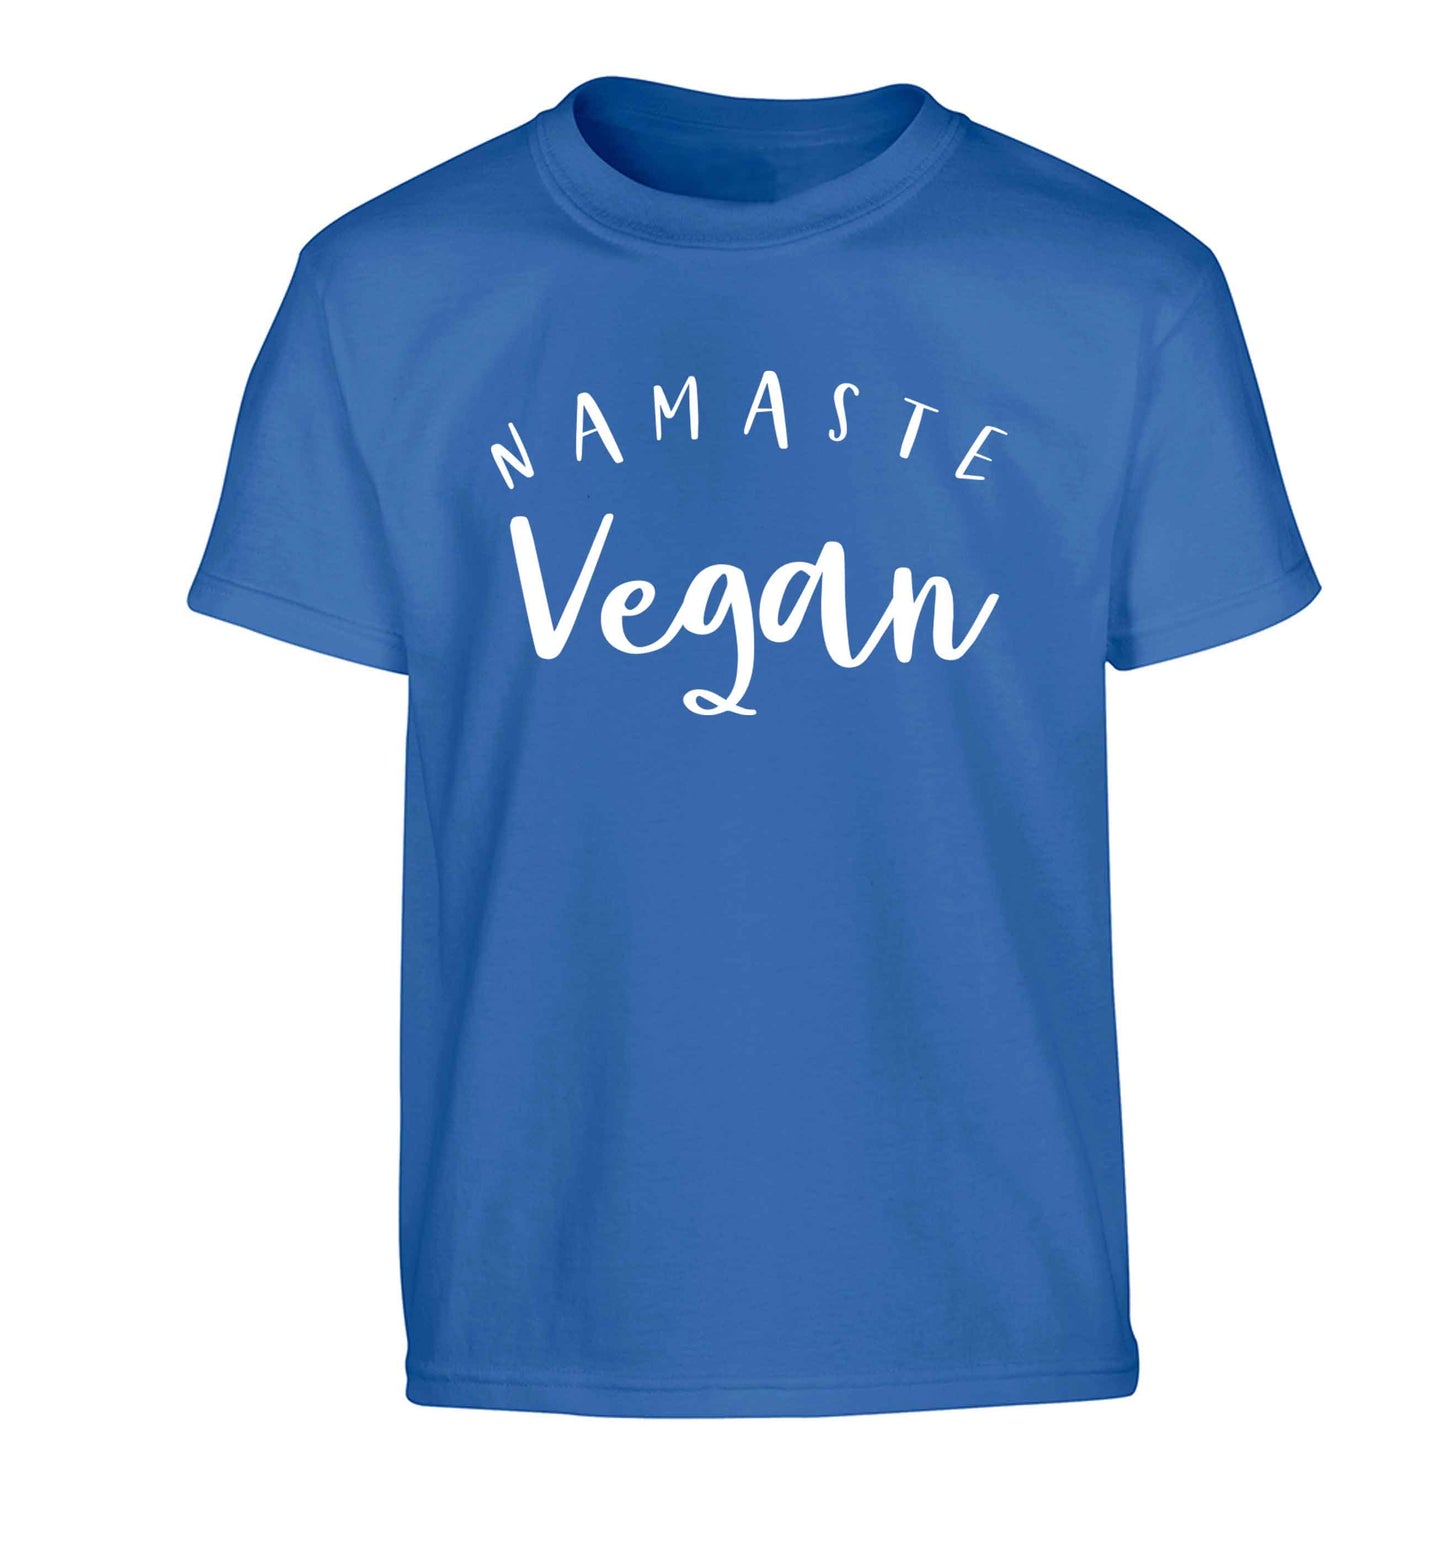 Namaste vegan Children's blue Tshirt 12-13 Years